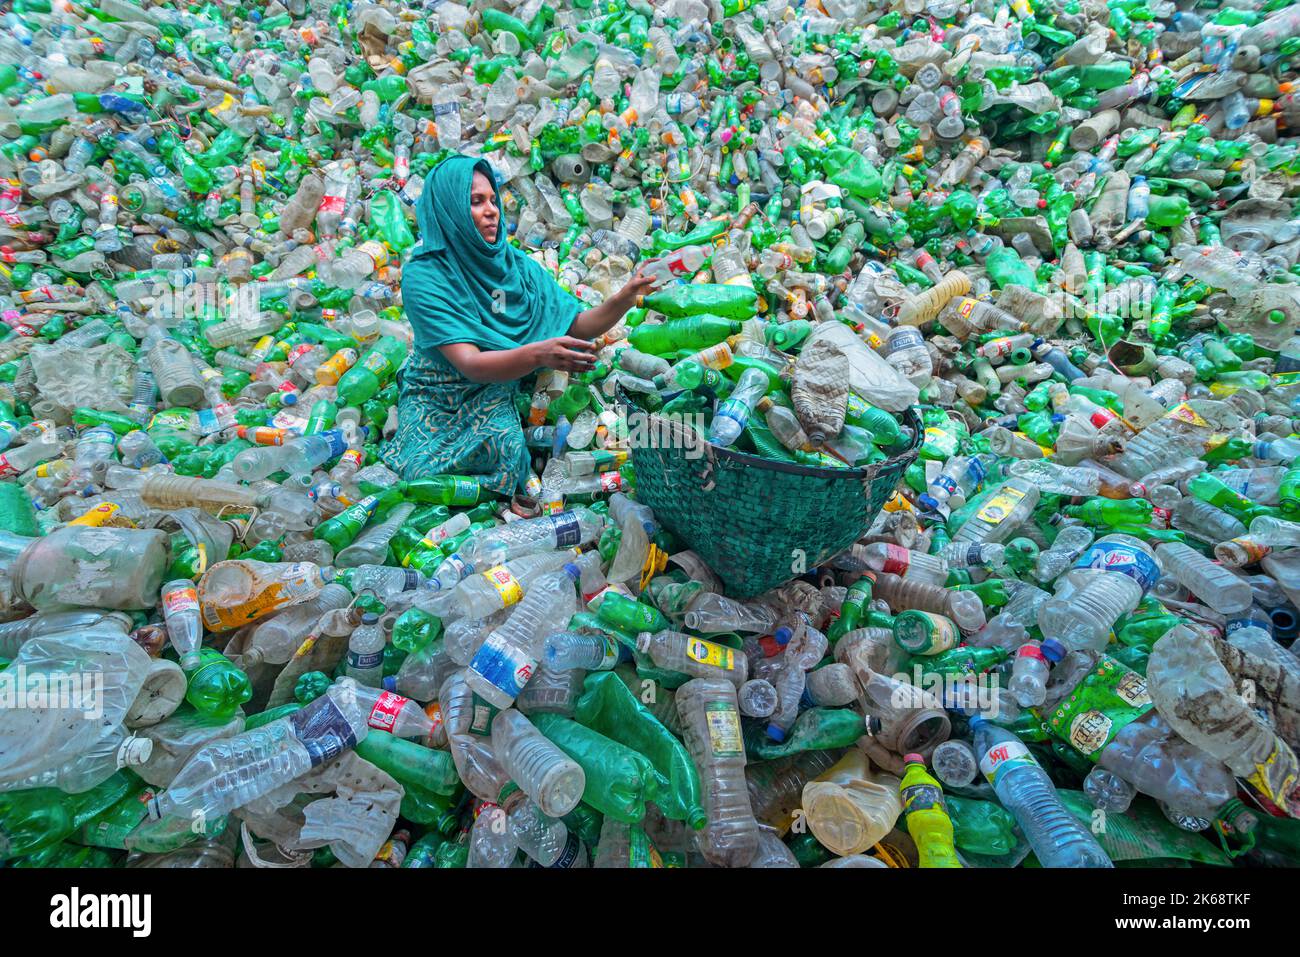 Los trabajadores clasifican botellas de plástico usadas en una fábrica de reciclaje. El reciclaje de plásticos es la mejor manera de hacer nuestro medio ambiente limpio y seguro. Foto de stock